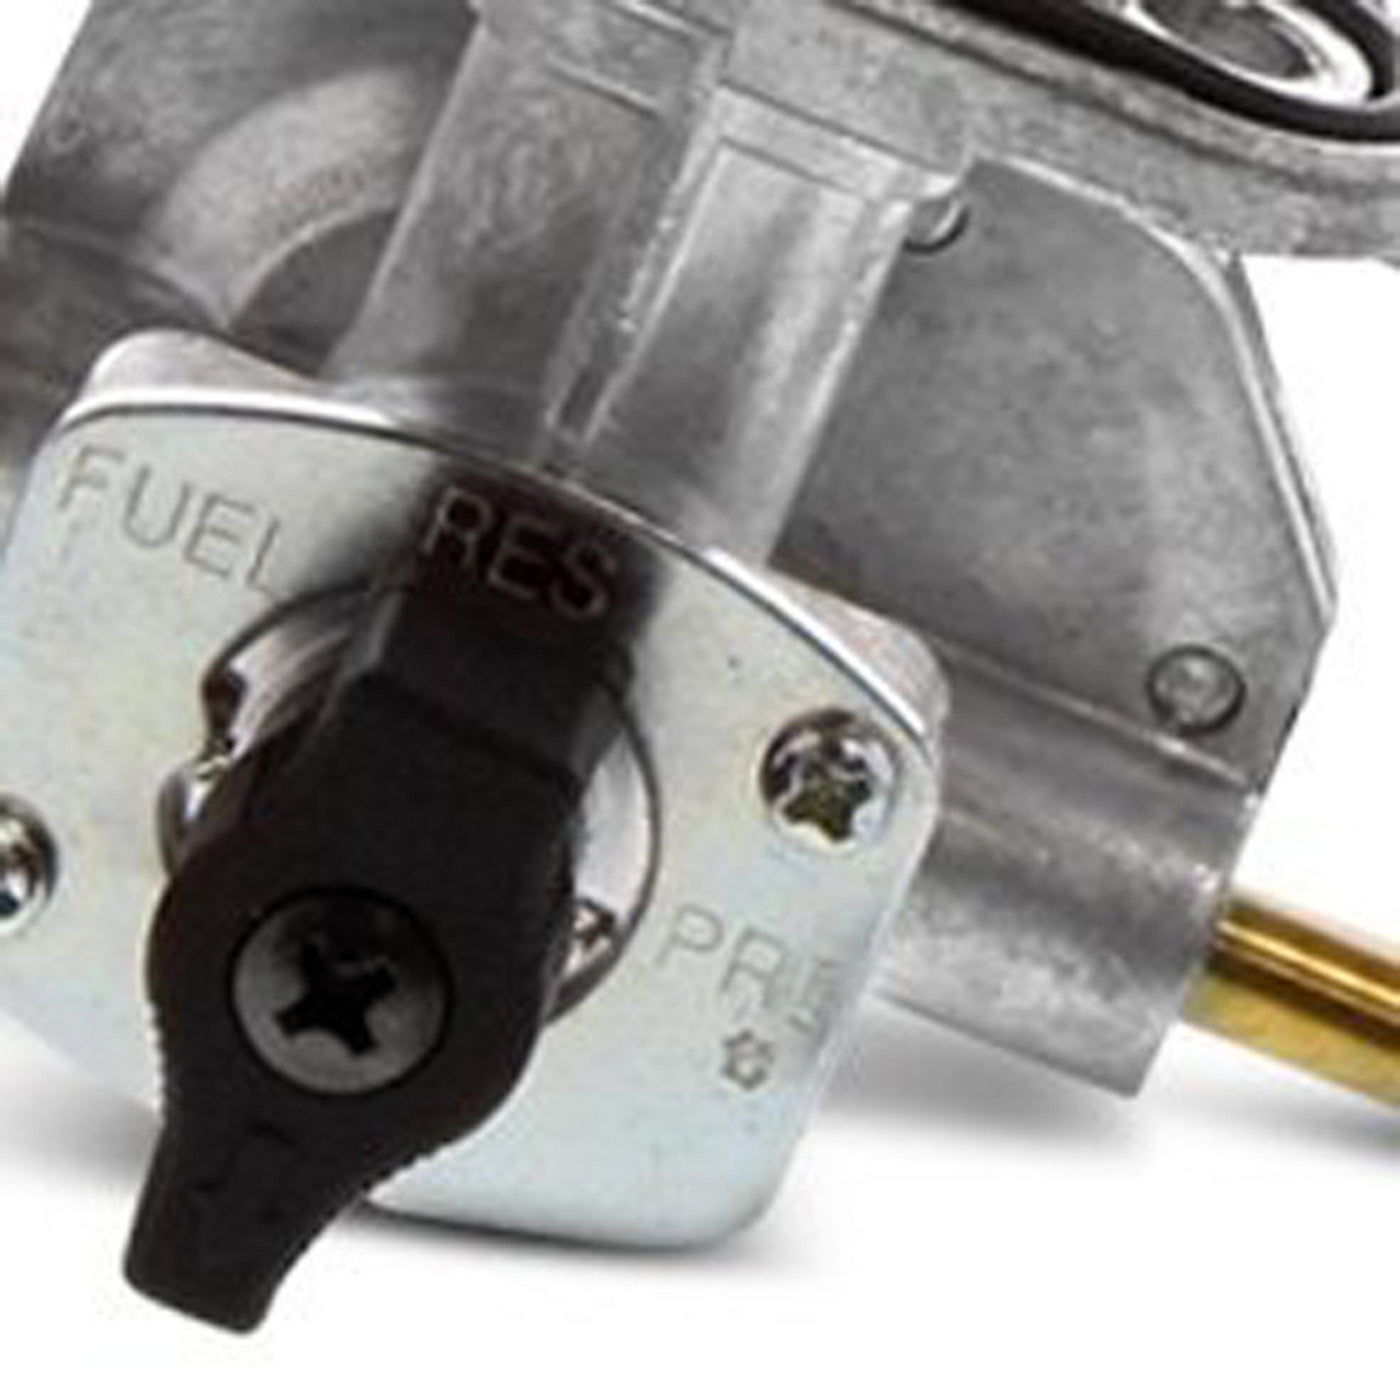 Fuel Star FS101-0142 Fuel Valve Kit #FS101-0142